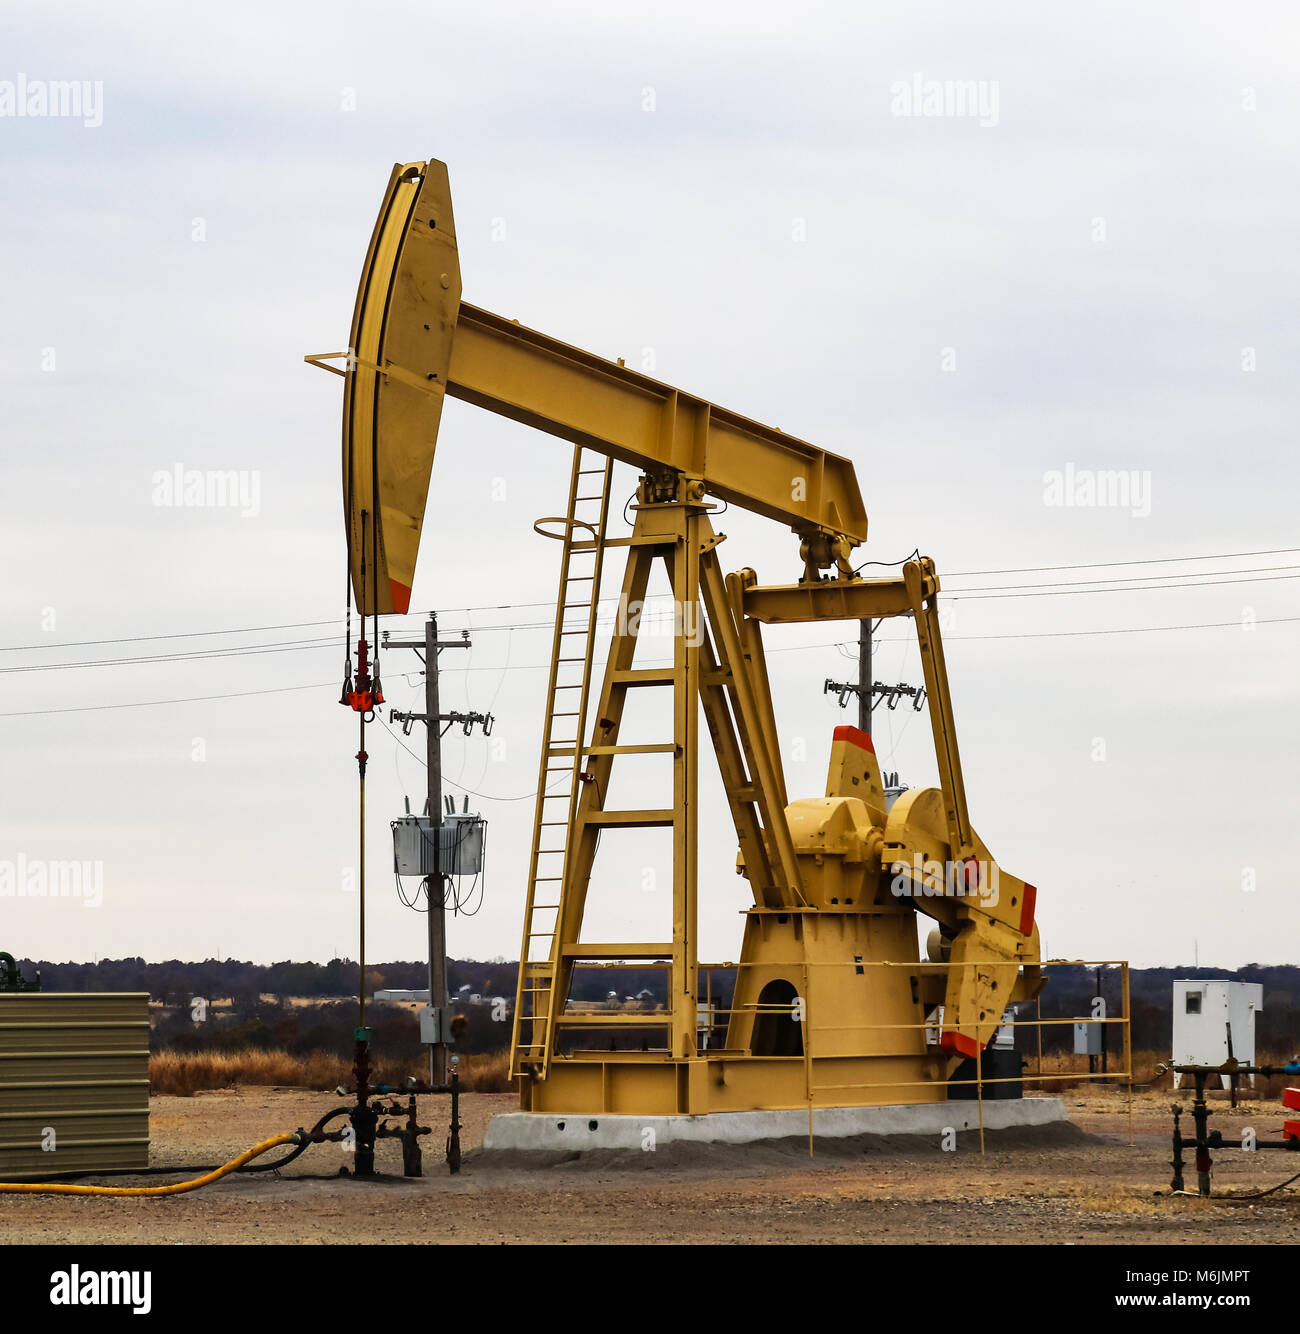 Extraktion Der Pumpjack-Öl-Pumpe Fracking-Ausrüstungs-natürlichen Ressource  Stockbild - Bild von industrie, geschäft: 109162657